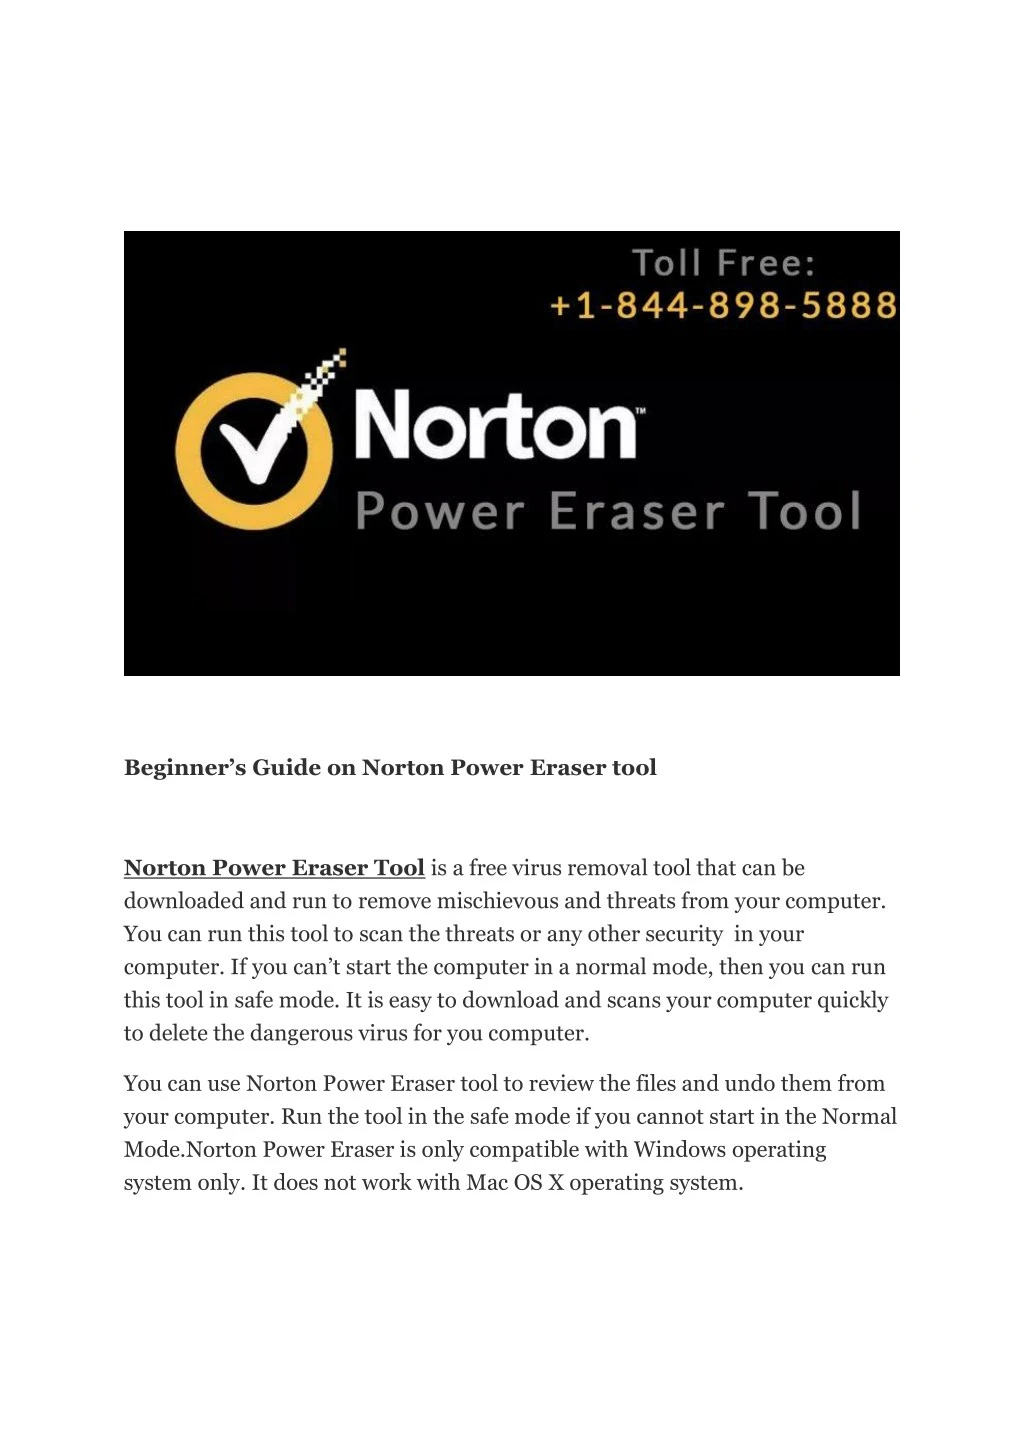 beginner s guide on norton power eraser tool